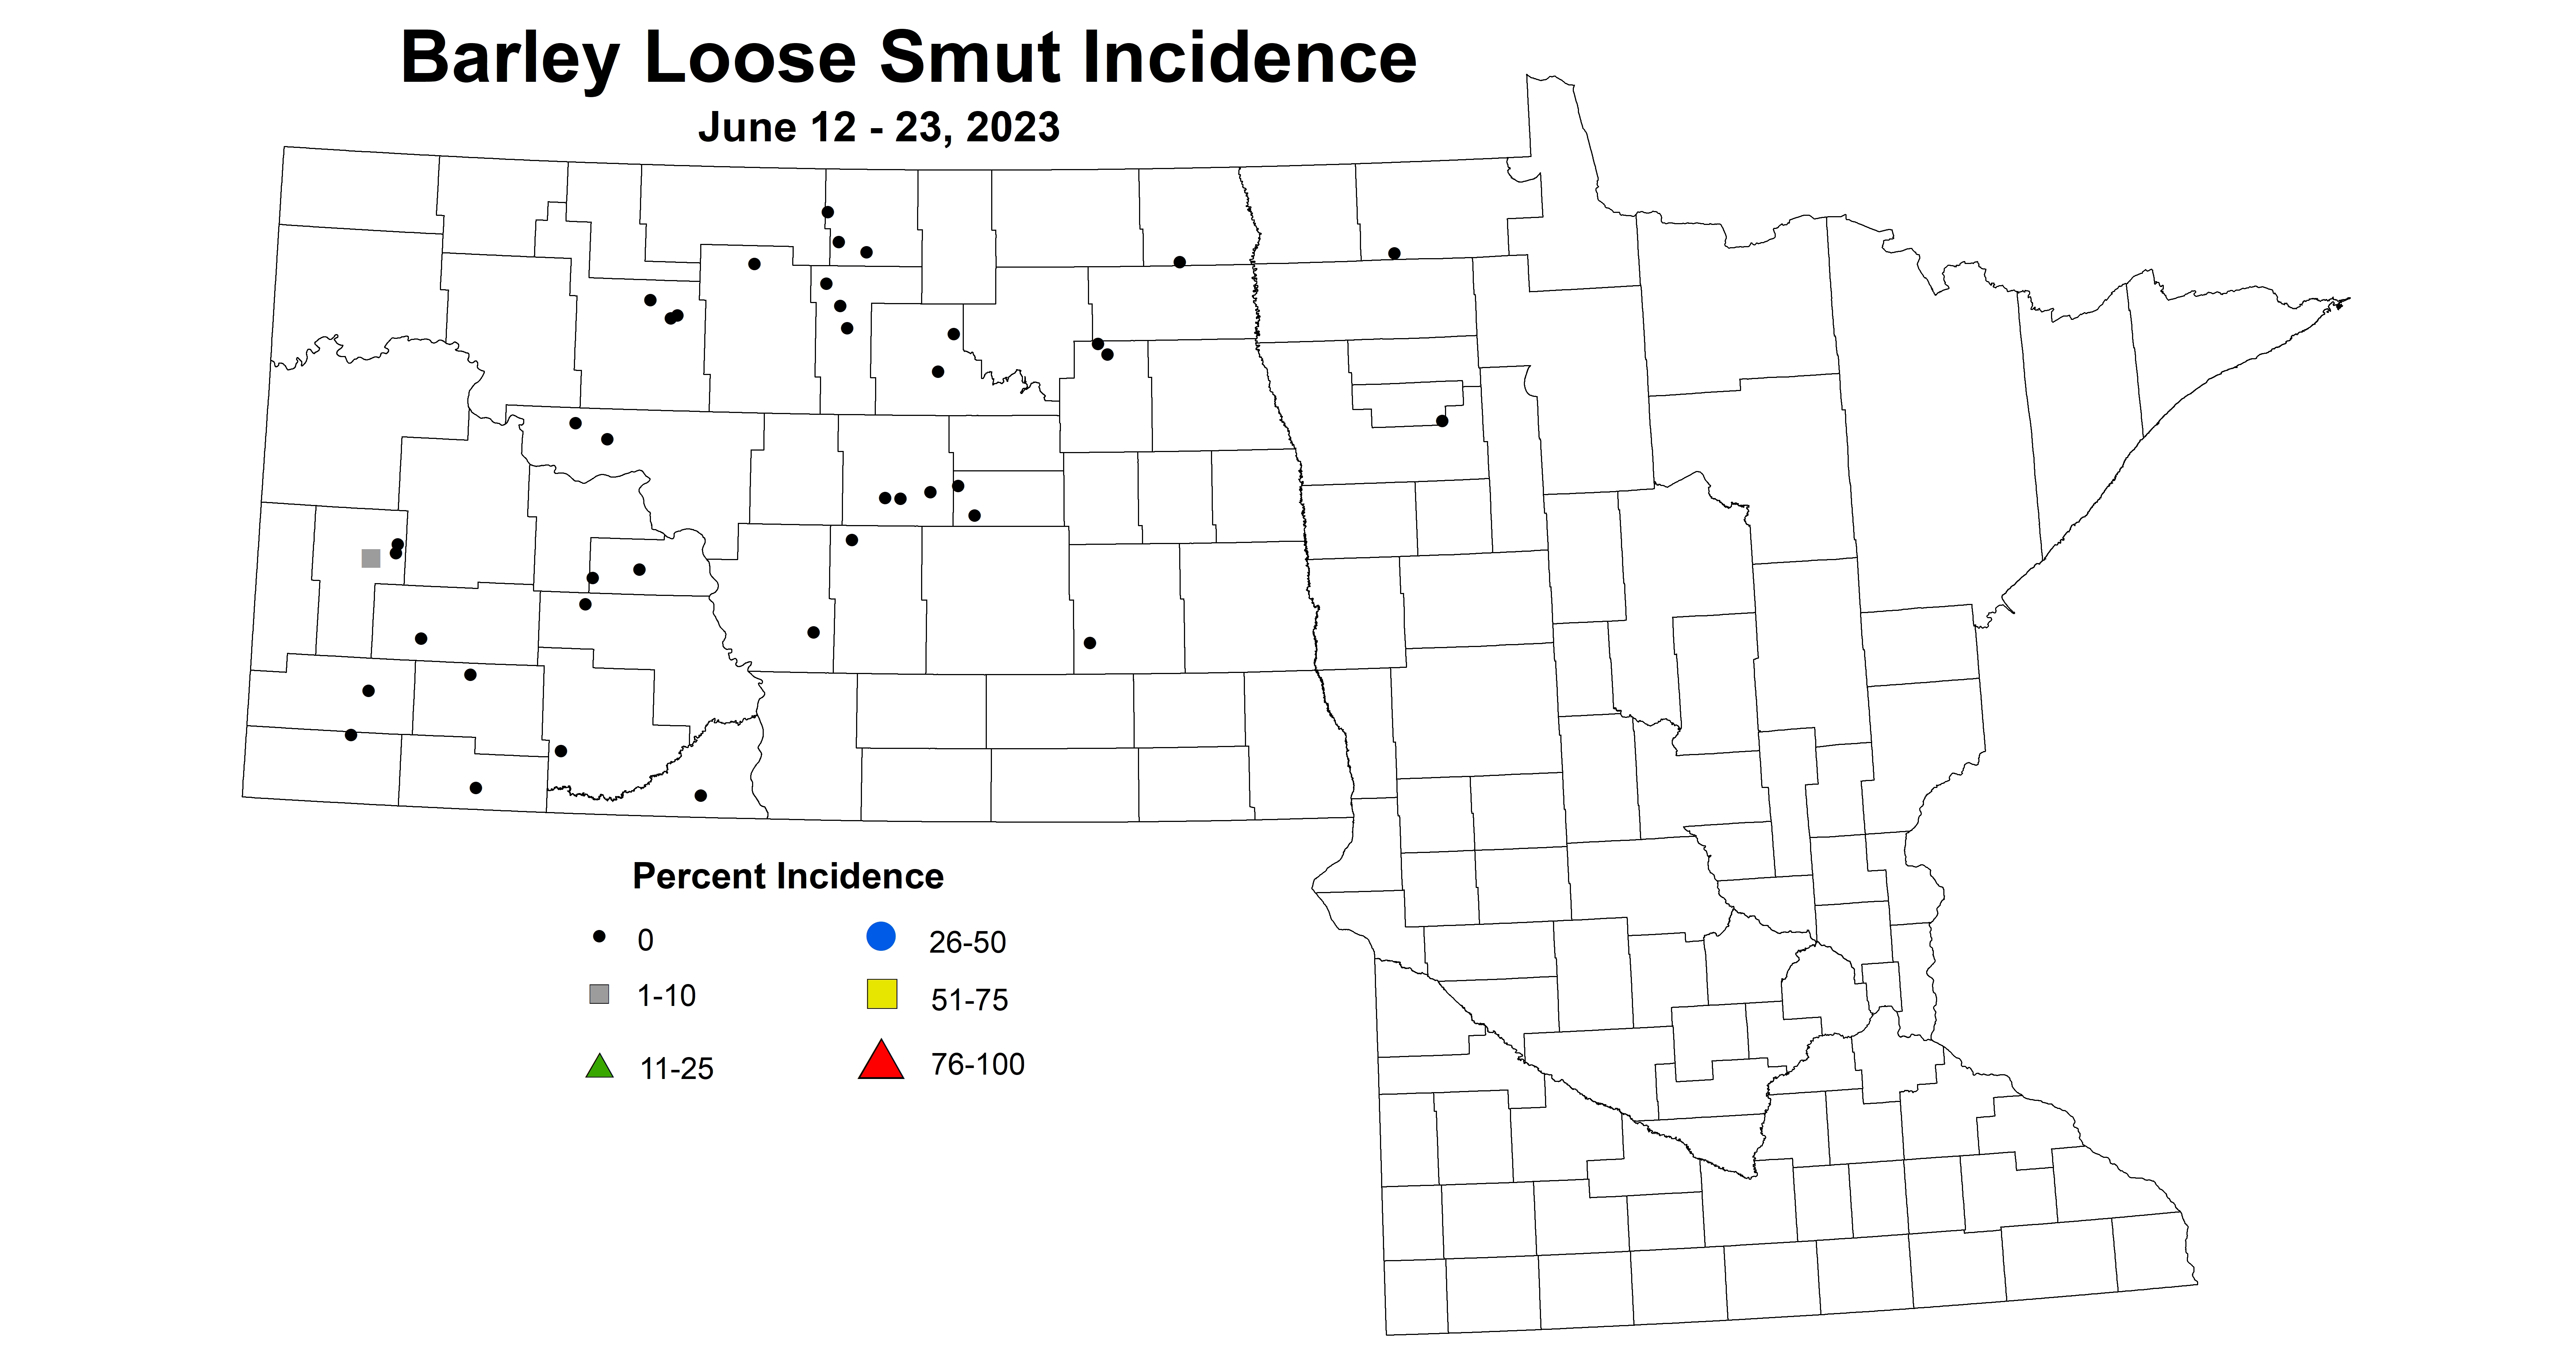 barley loose smut incidence June 12-23 2023 updated